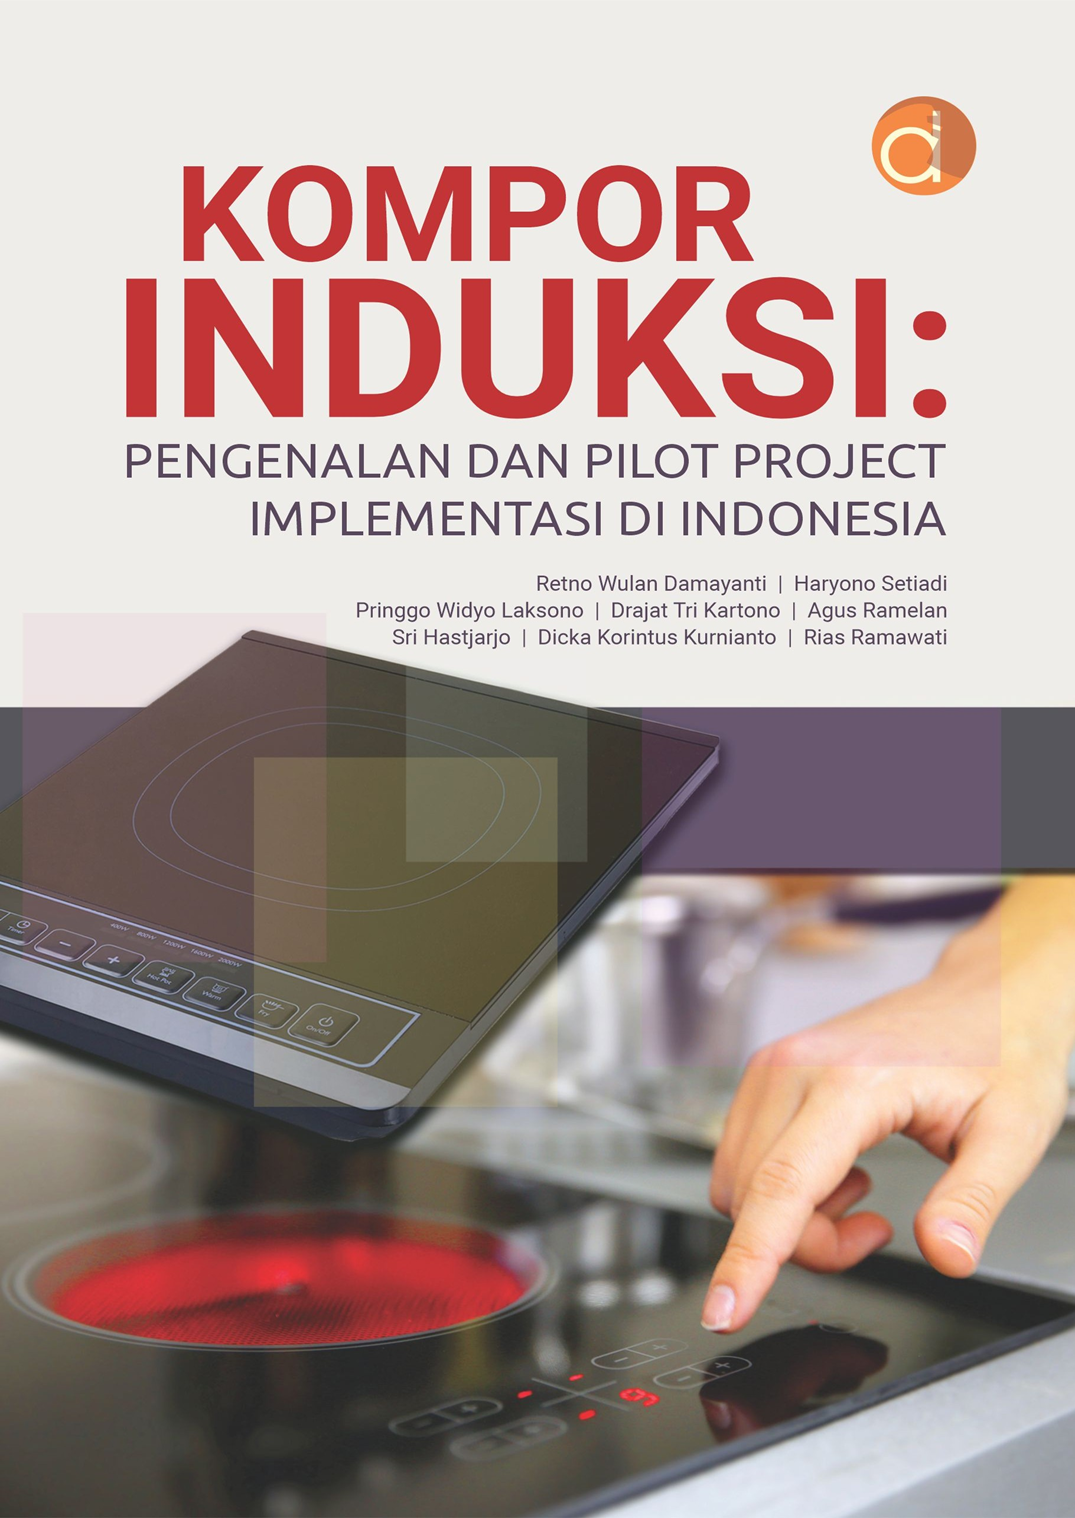 Ringkasan Buku “Kompor Induksi: Pengenalan dan Pilot Project Implementasi di Indonesia”